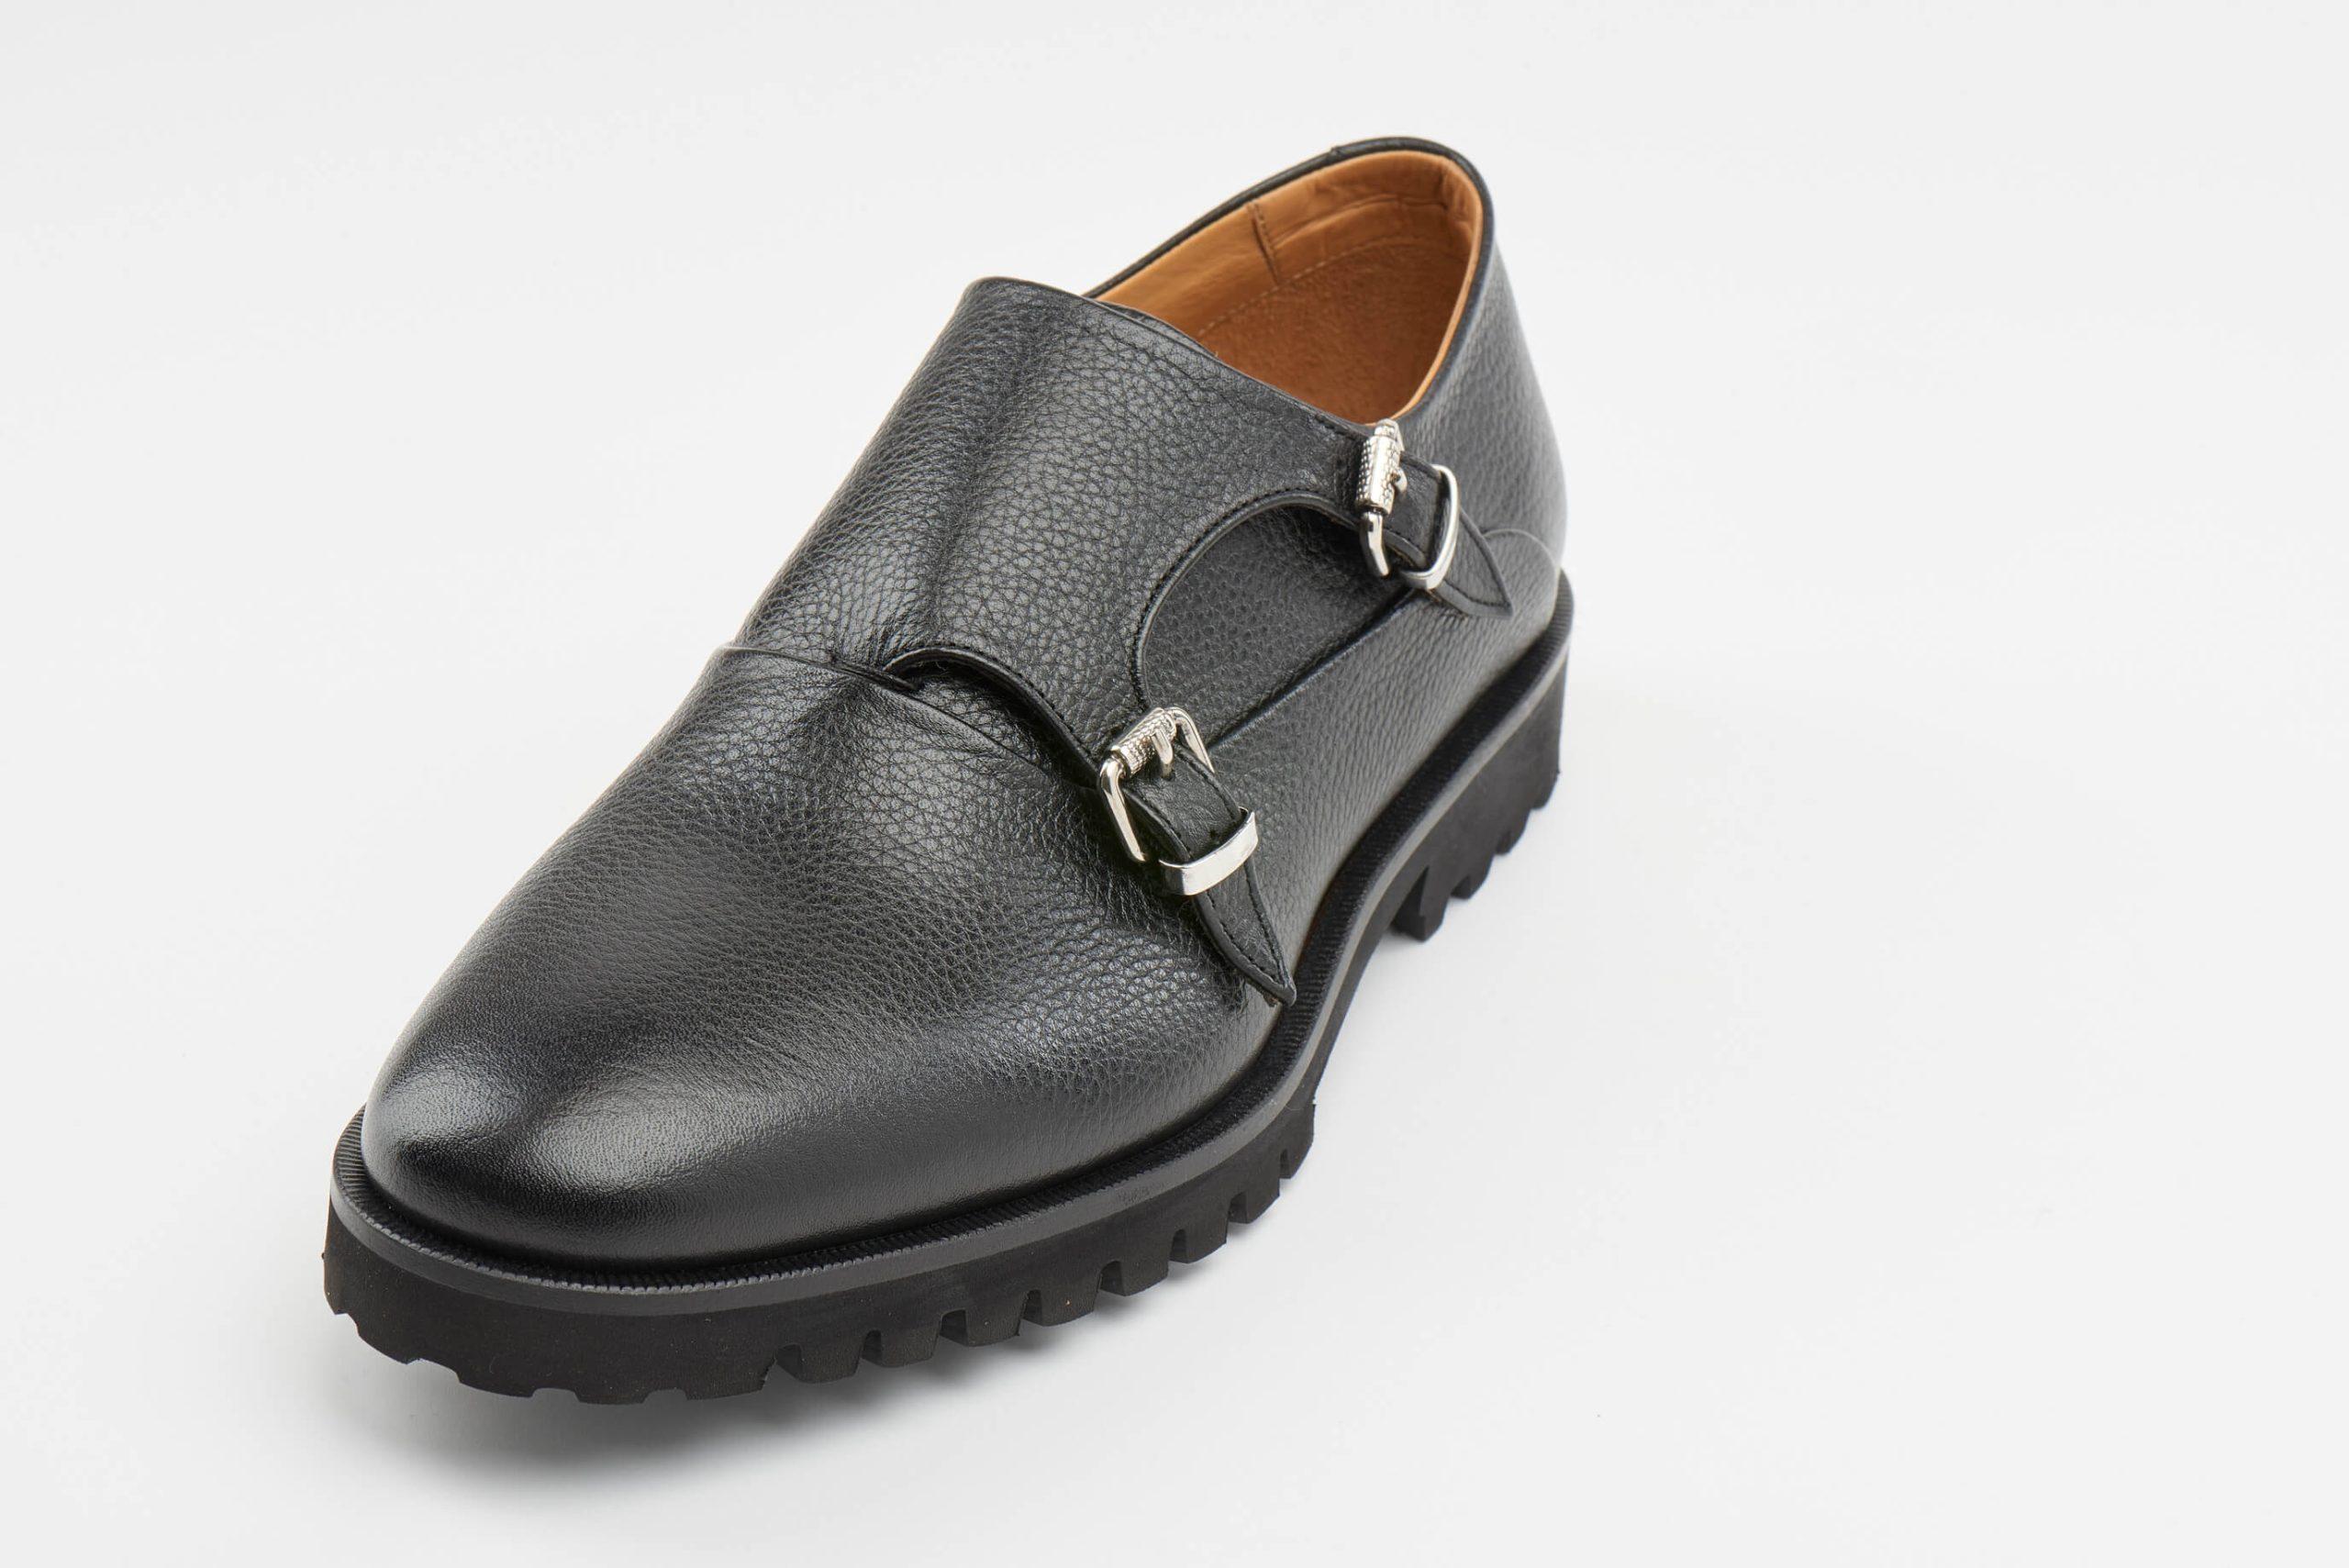 Luis Onofre Portuguese Shoes FW22 – HS0804_01 – Cozy Black-5